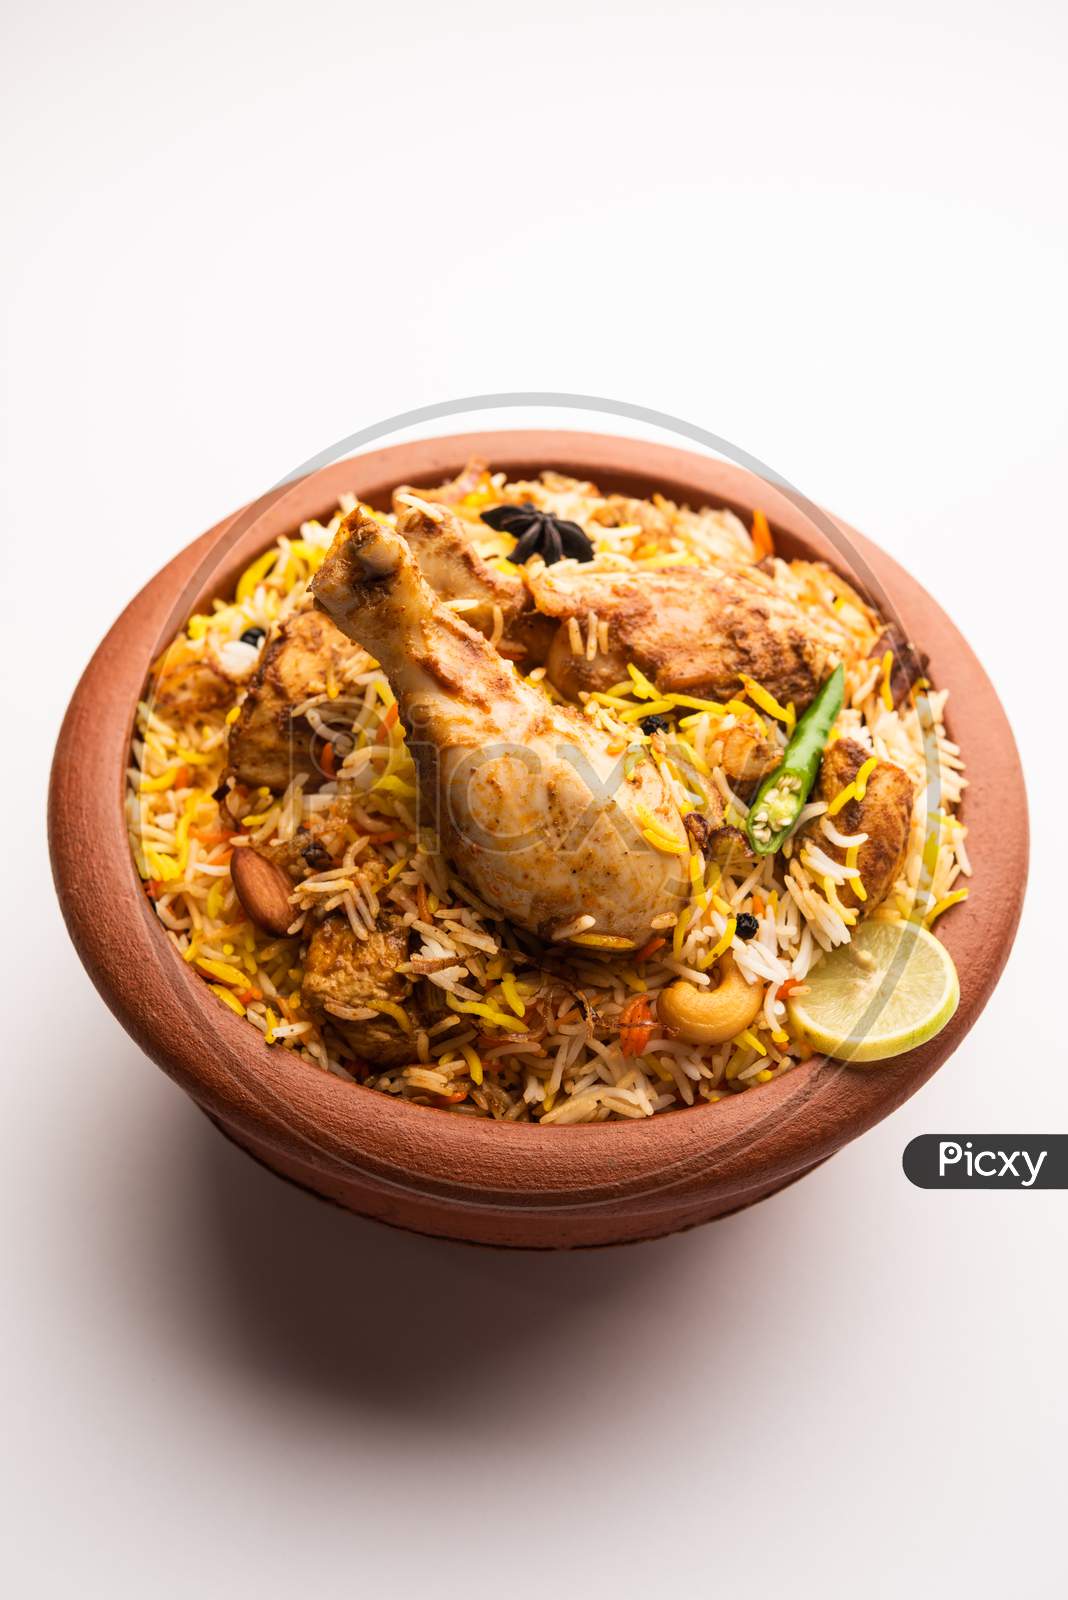 Dum Handi Chicken Biryani Is Prepared In An Earthen Or Clay Pot Called Haandi. Popular Indian Non Vegetarian Food